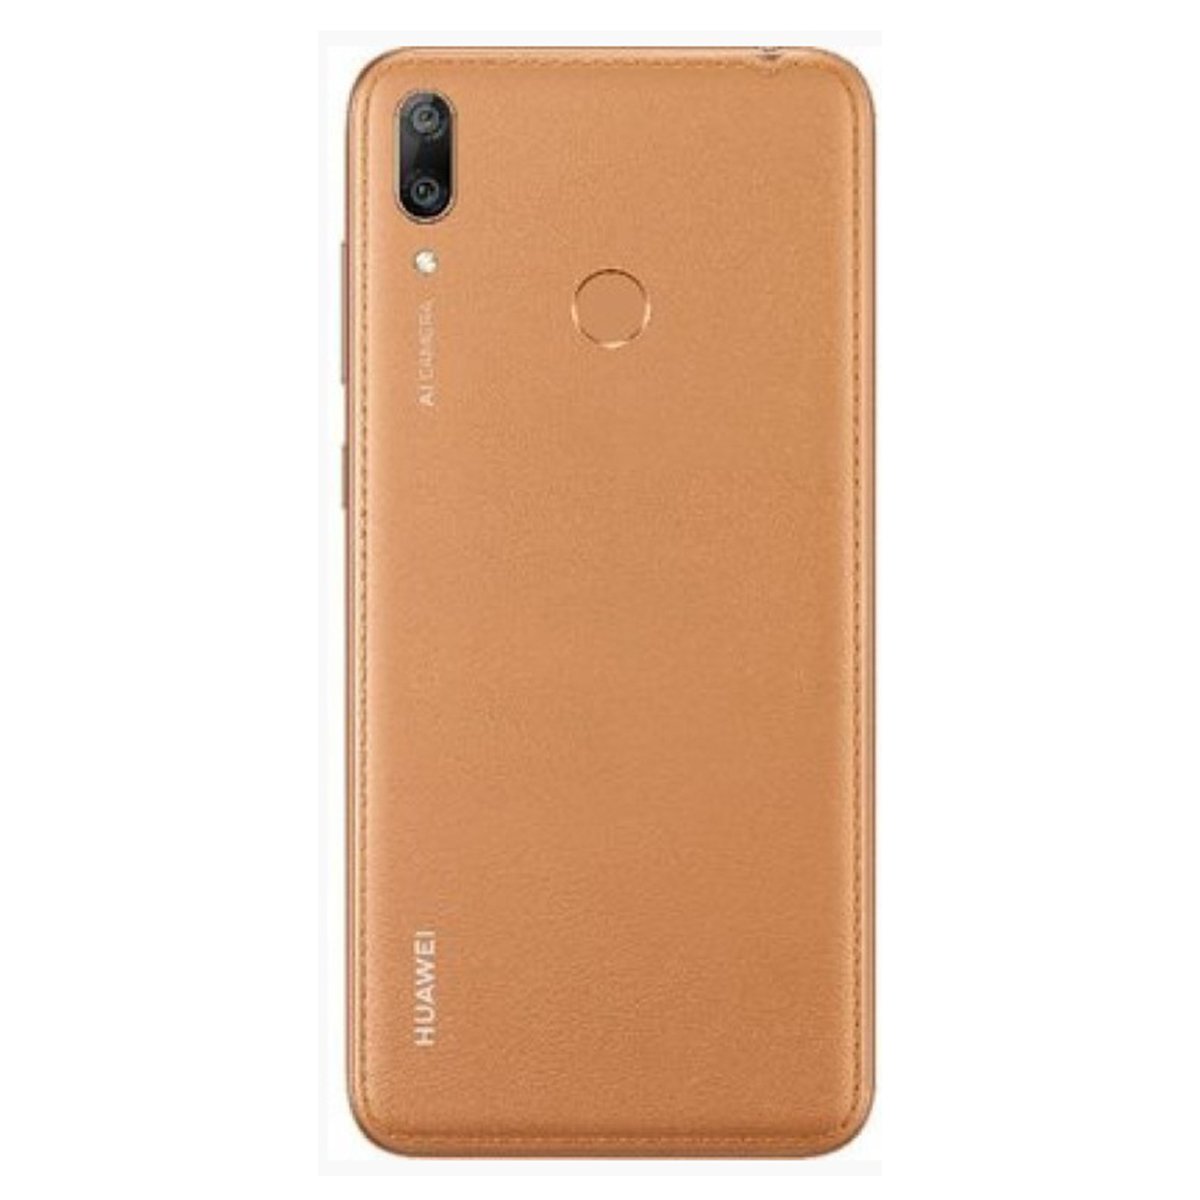 Huawei Y7 Prime 2019 64GB Amber Brown